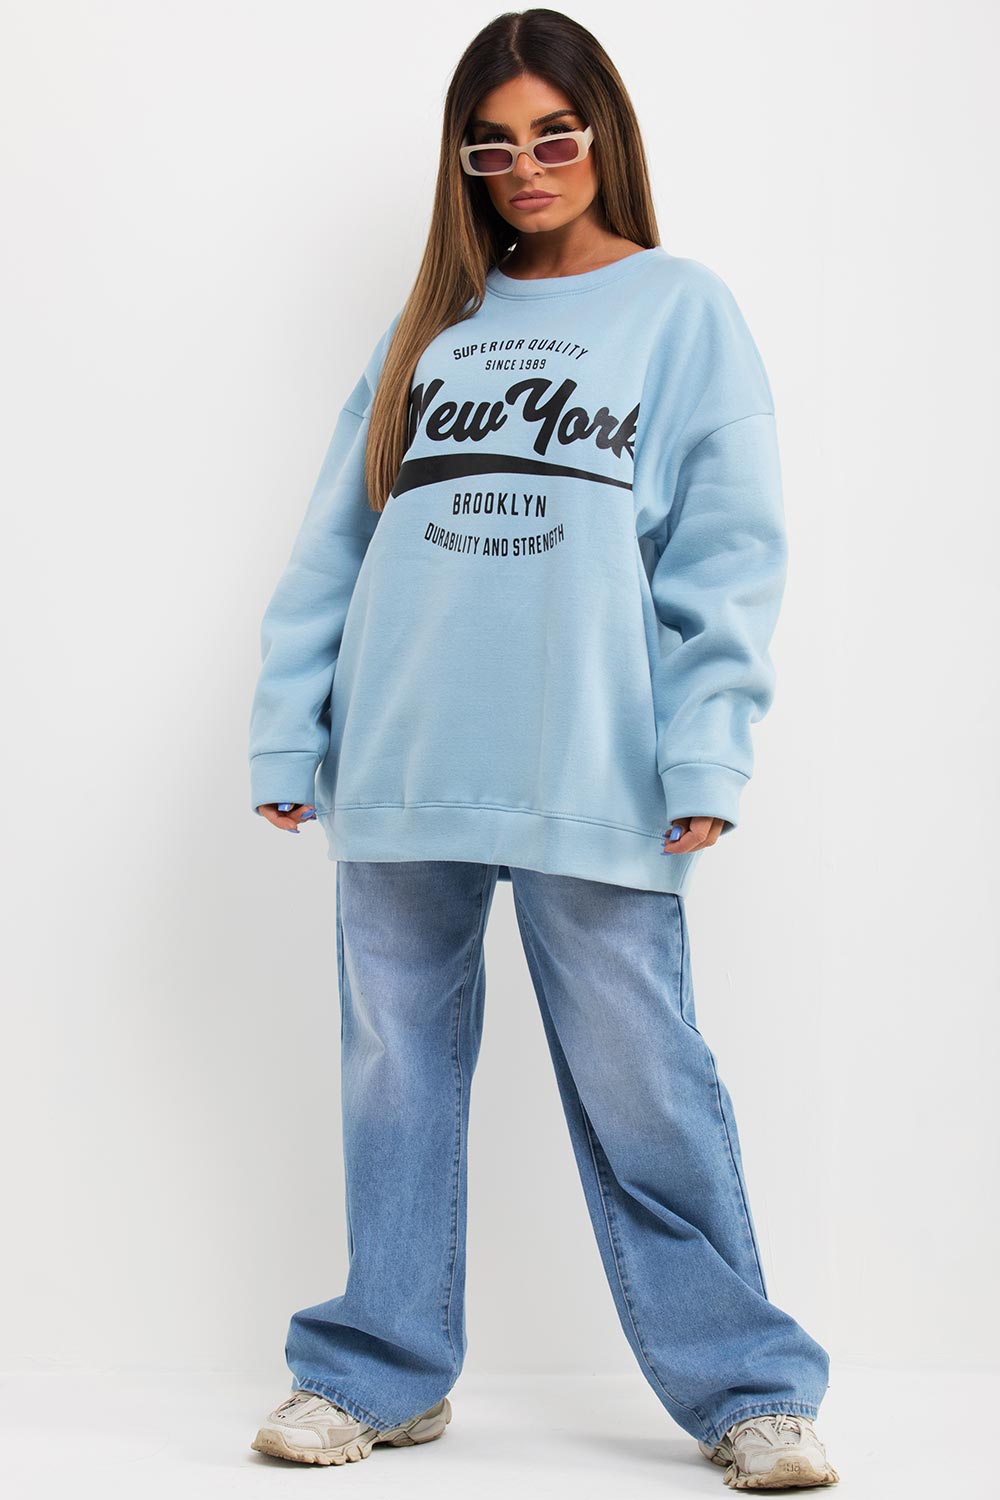 new york slogan oversized sweatshirt womens